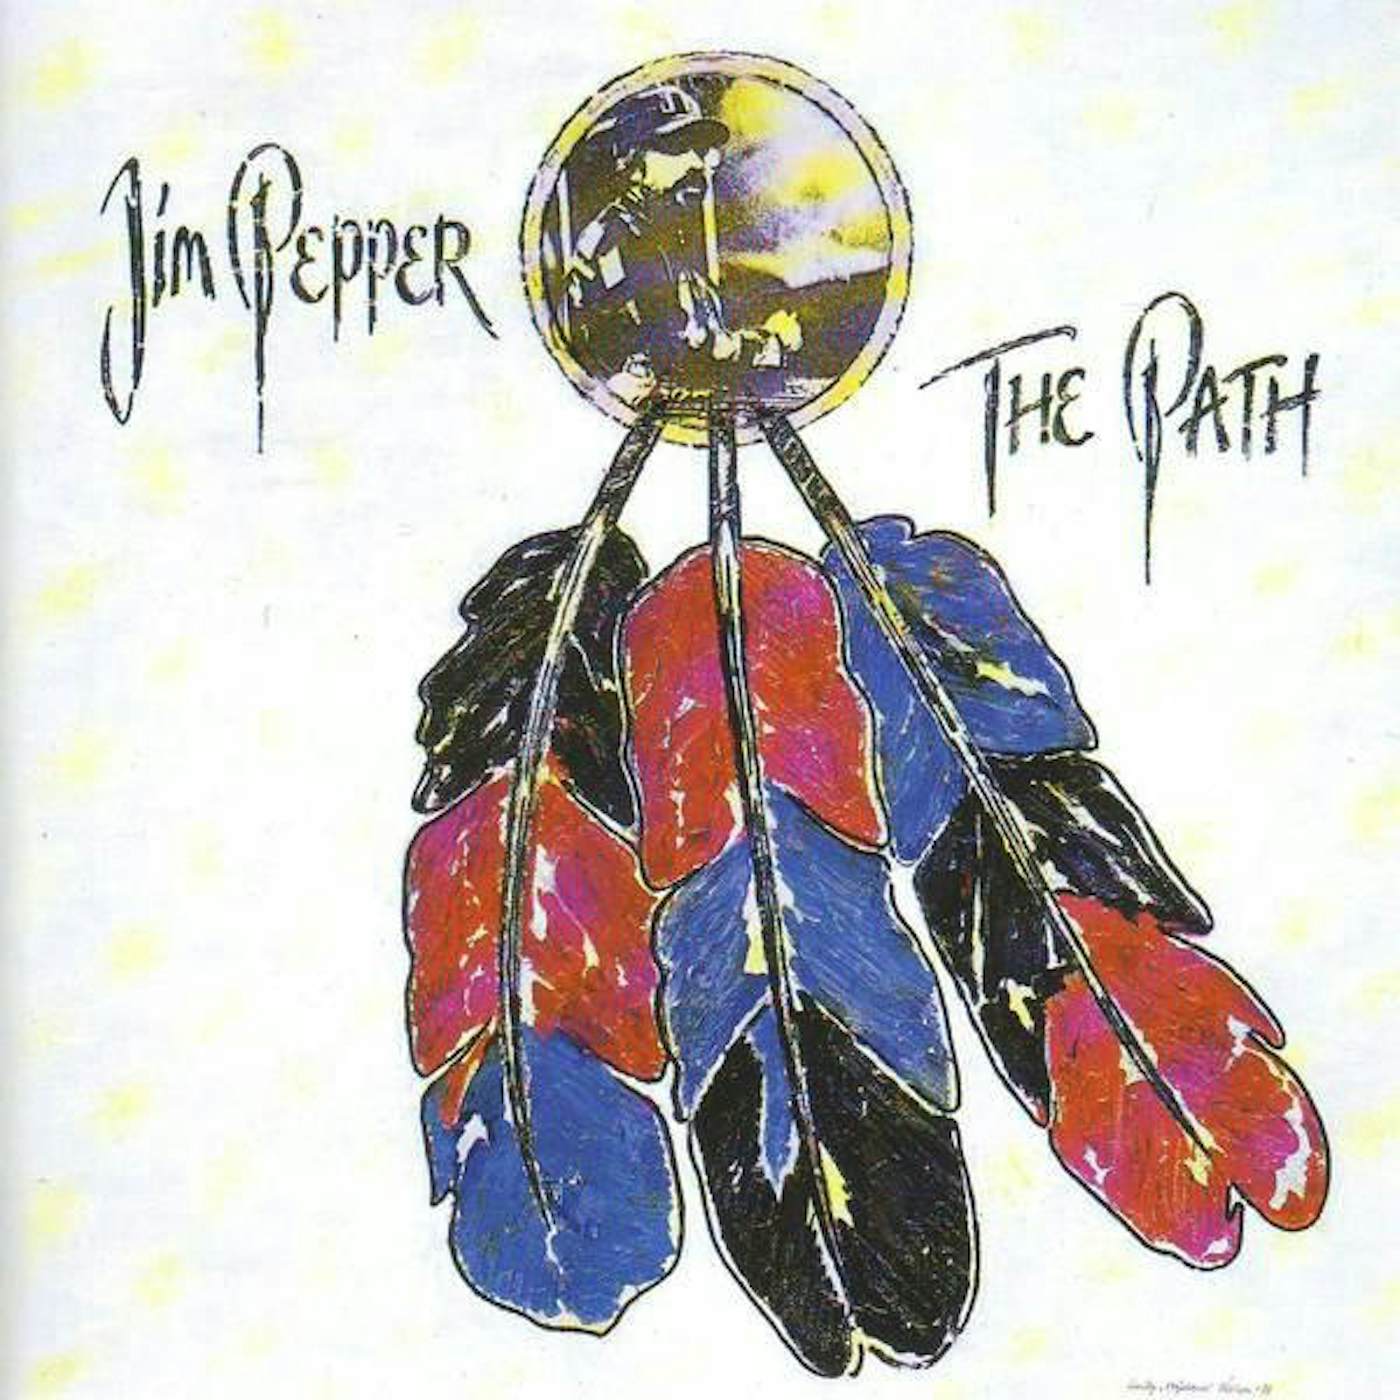 Jim Pepper